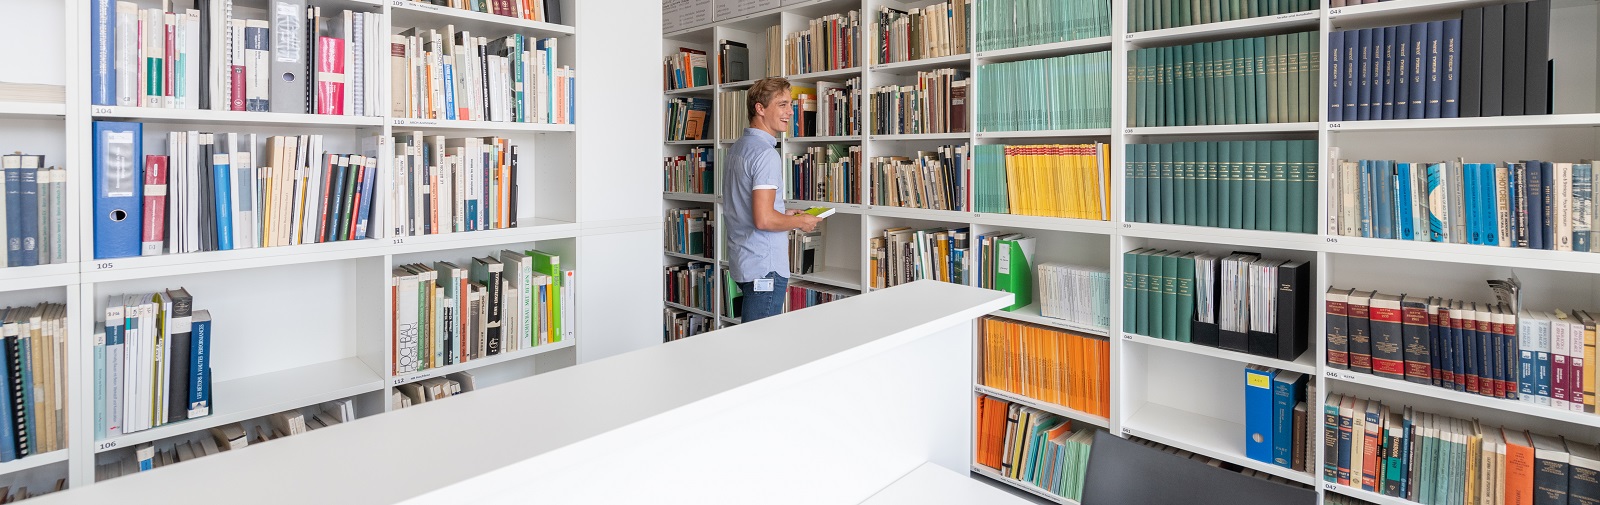 Bibliotheksraum der Smart Minerals GmbH